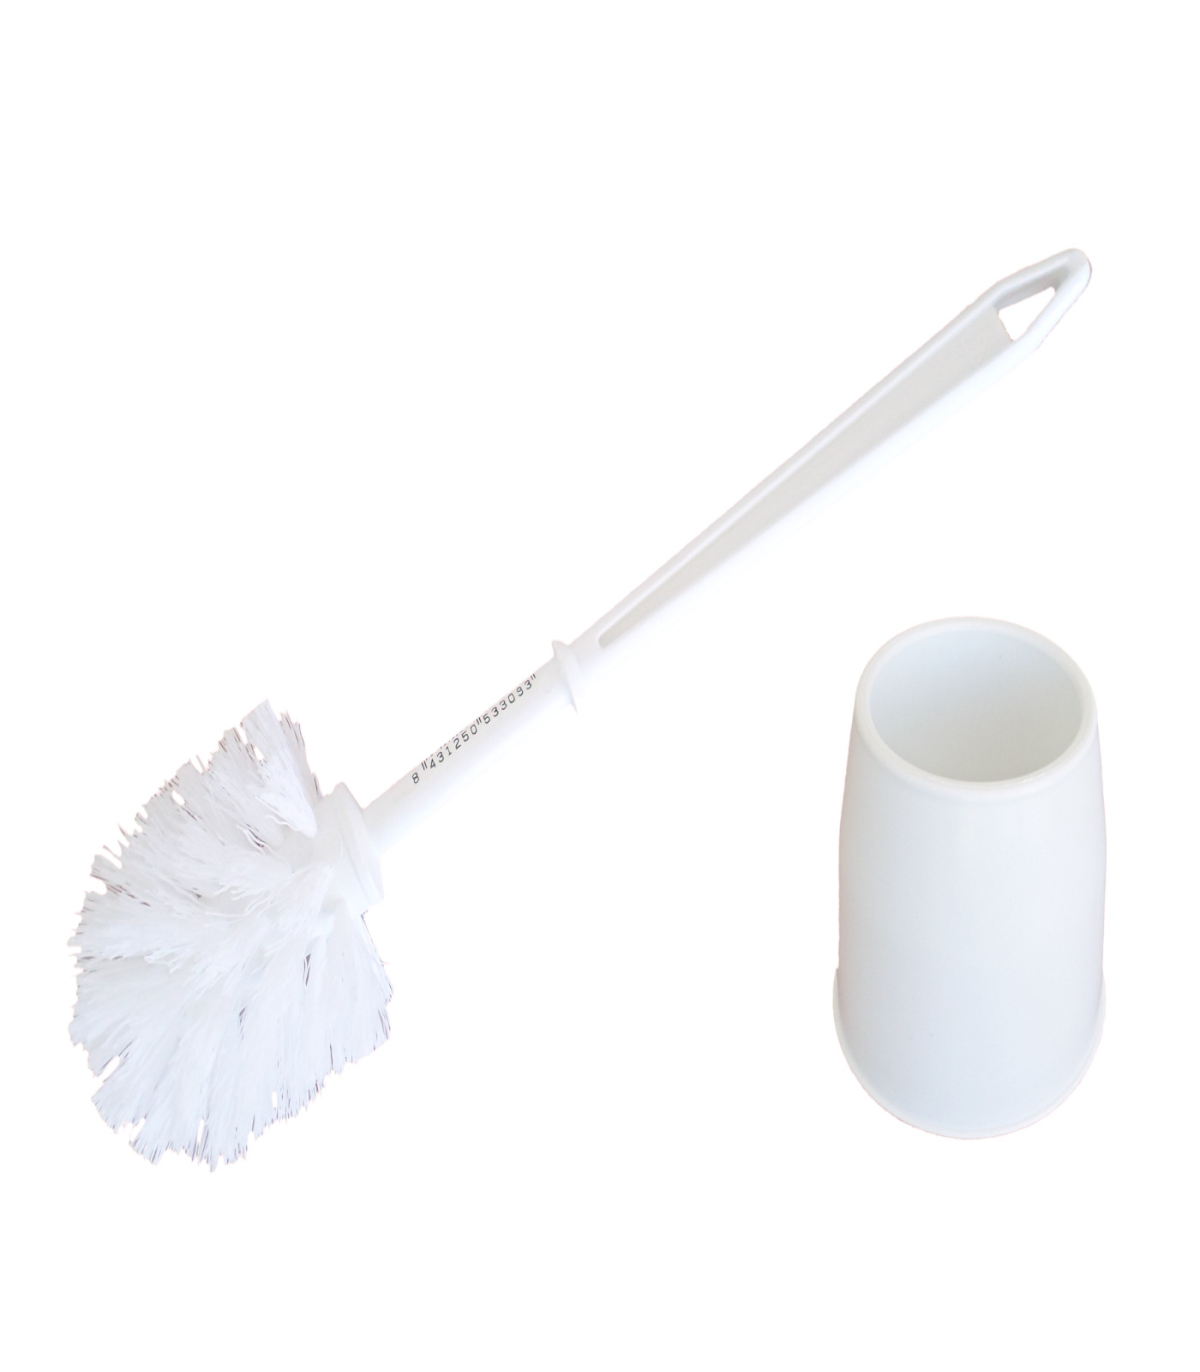 Pamex - Escobillero completo plástico, color blanco 38,5 x 13 cm.  Recipiente y escobilla para baño para hogar o trabajo en colo